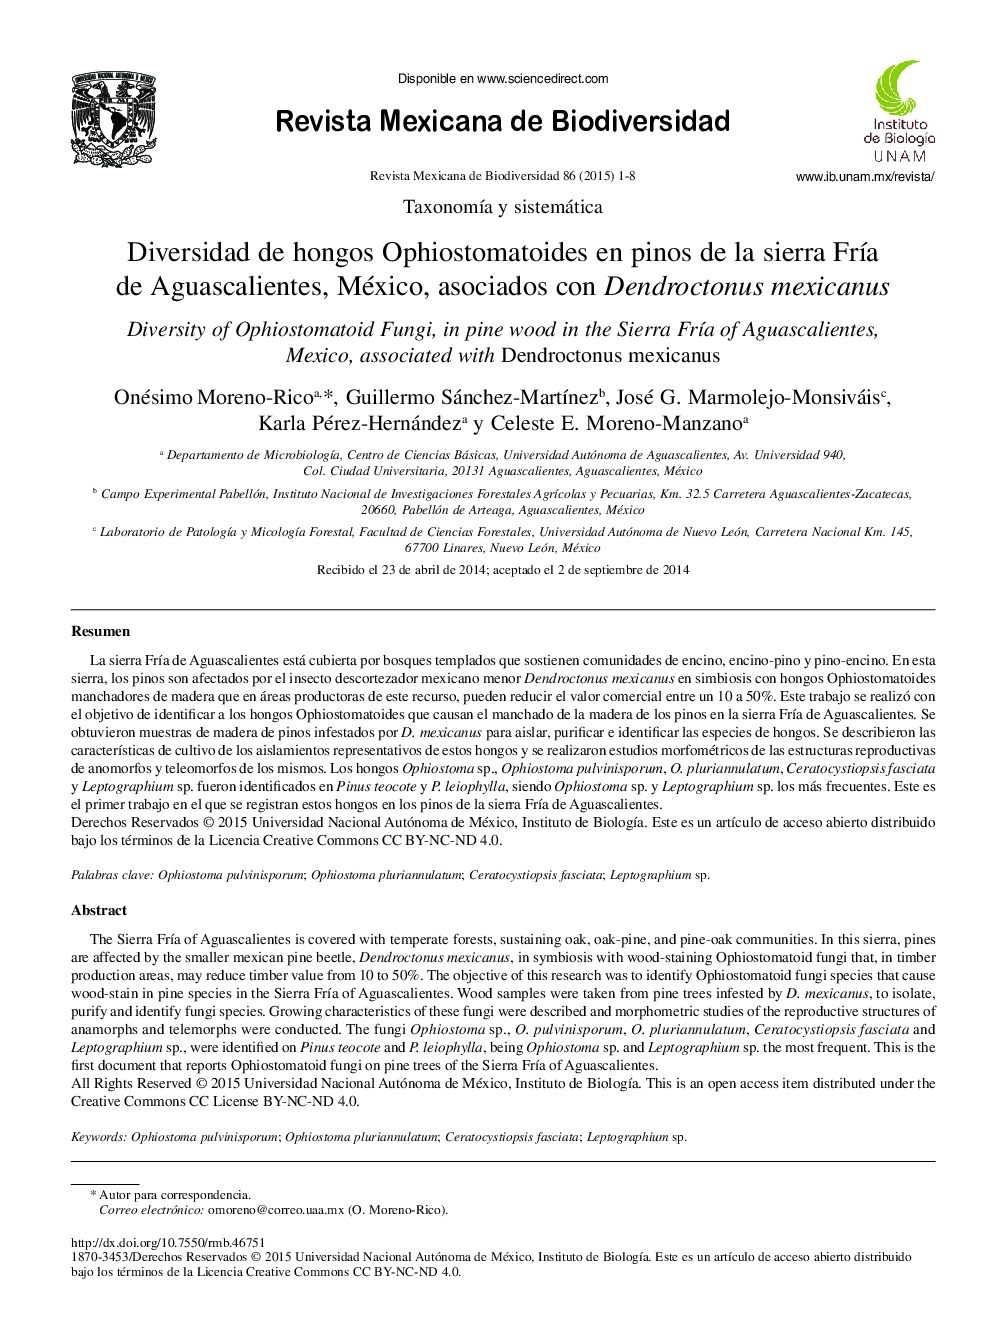 Diversidad de hongos Ophiostomatoides en pinos de la sierra Fría de Aguascalientes, México, asociados con Dendroctonus mexicanus